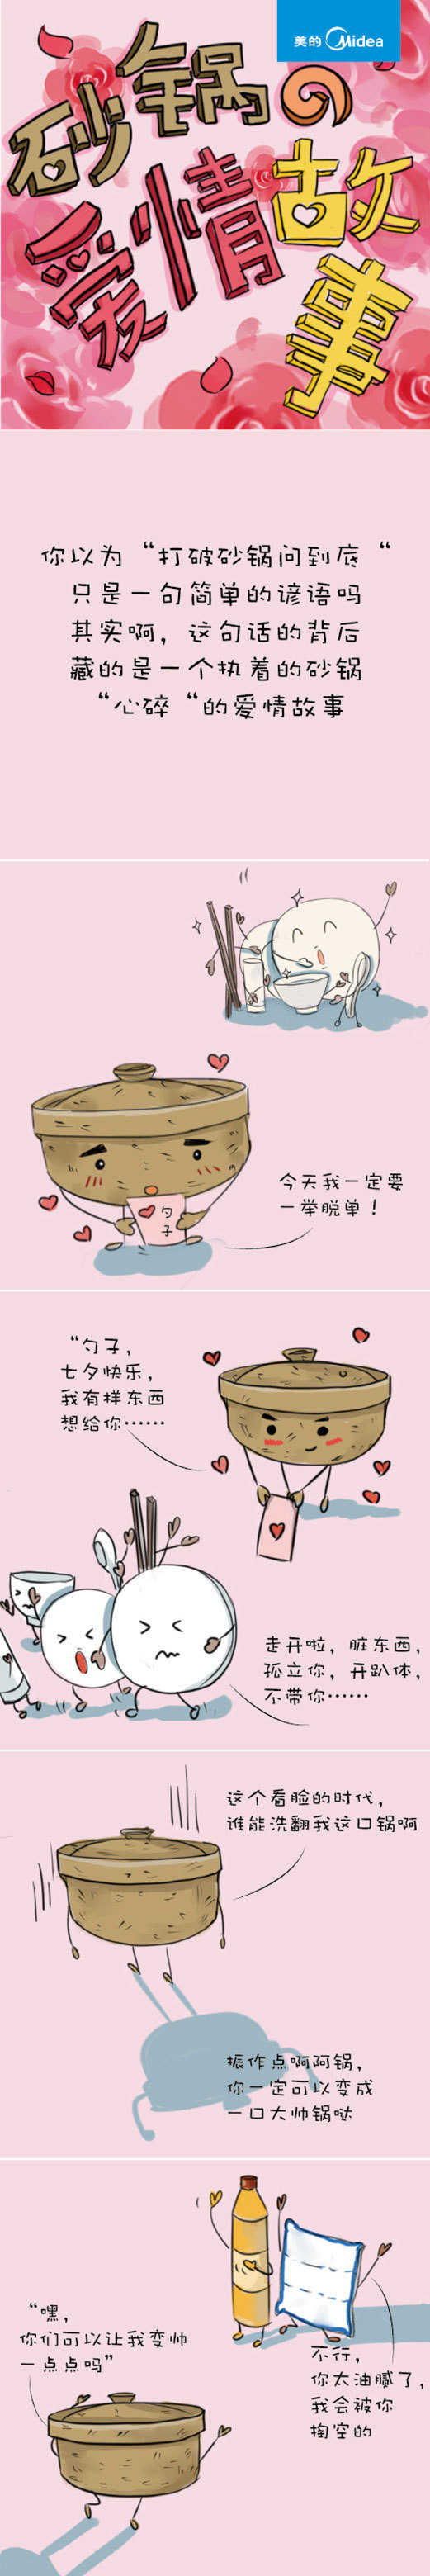 打破砂锅问到底,讲的居然是一个爱情故事?